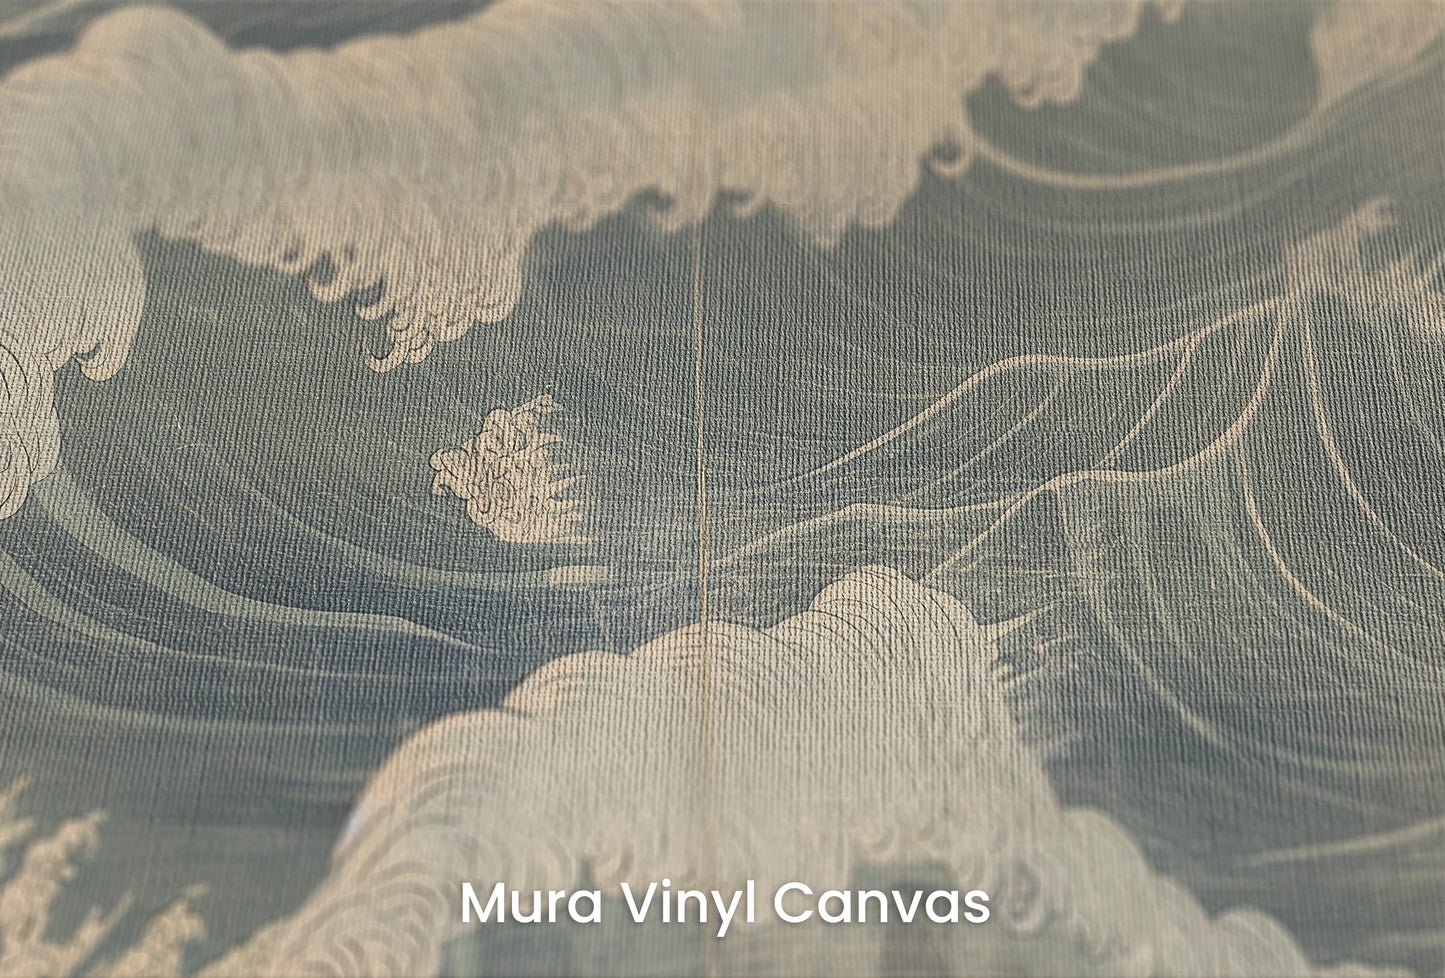 Zbliżenie na artystyczną fototapetę o nazwie Nocturnal Waves na podłożu Mura Vinyl Canvas - faktura naturalnego płótna.